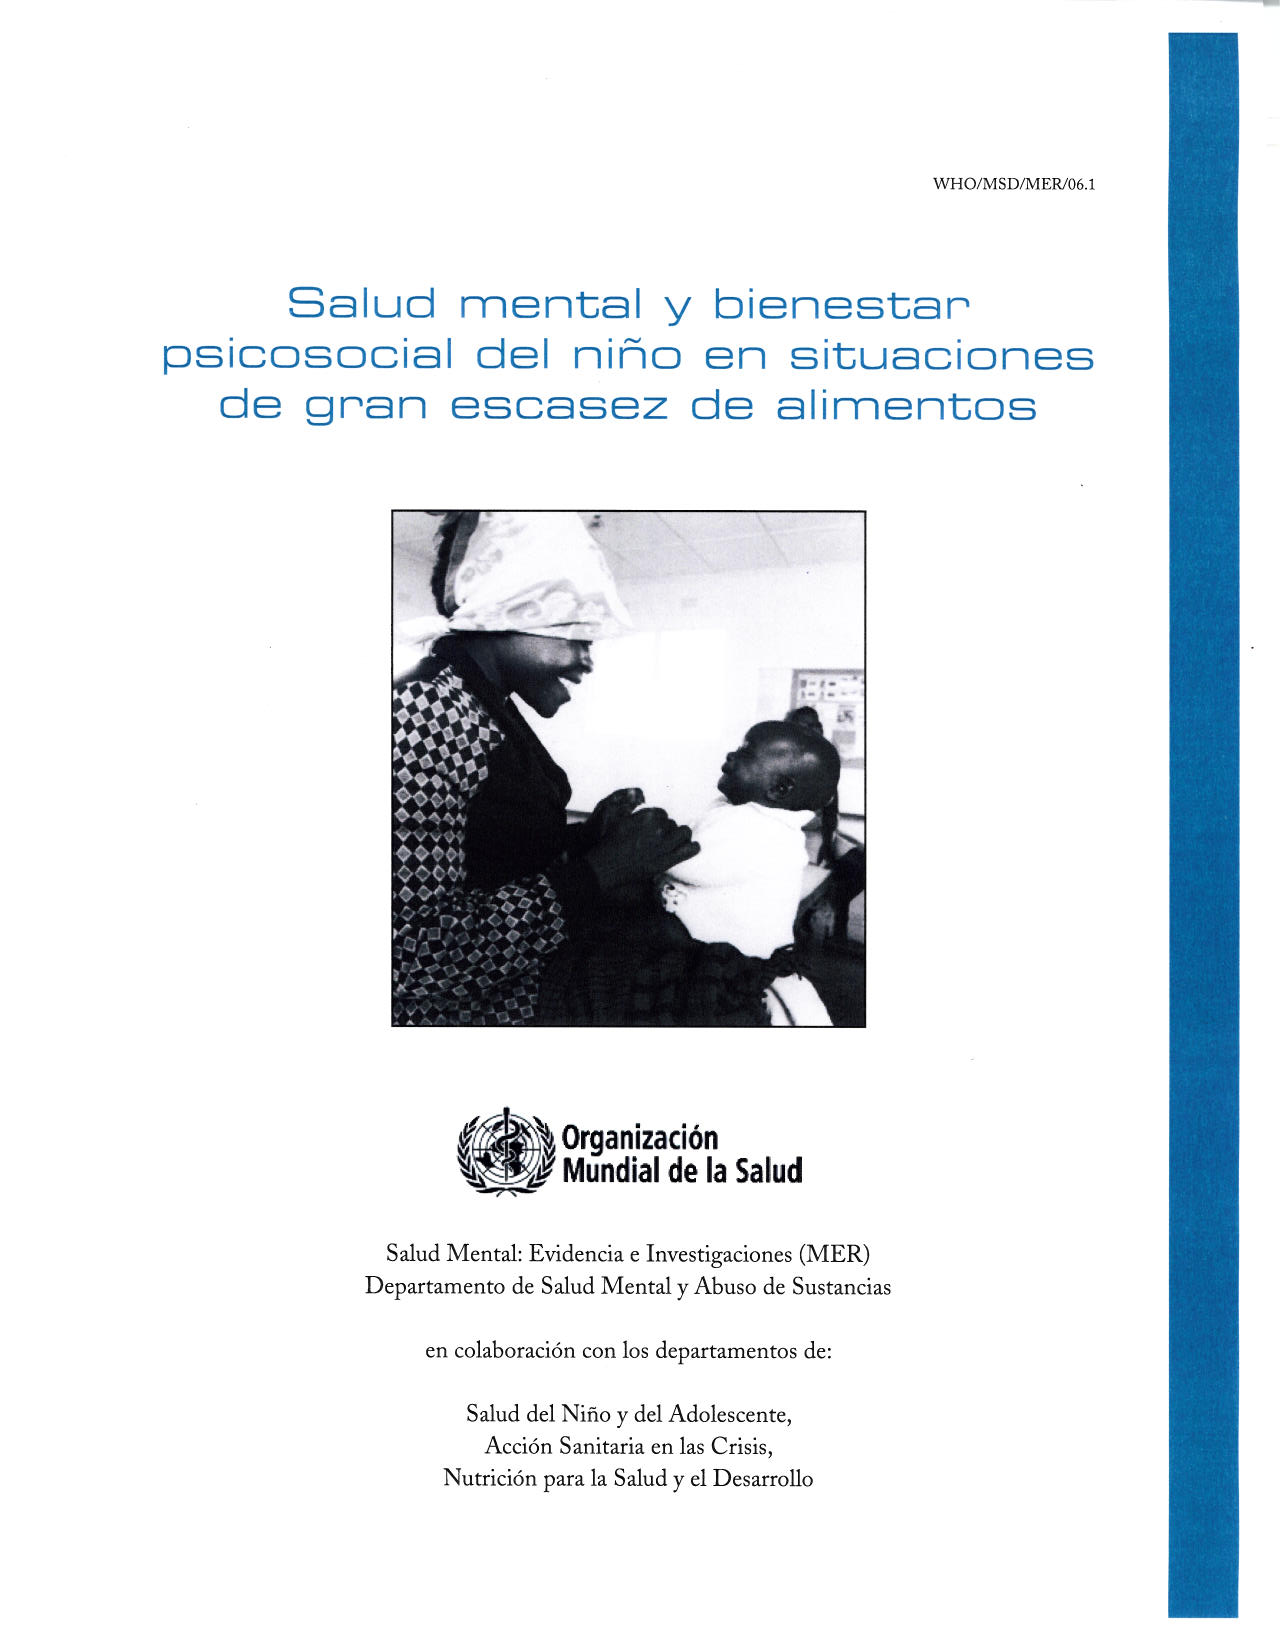 Salud mental y bienestar psicosocial del niño en situaciones de gran escasez de alimentos, OMS, 2006